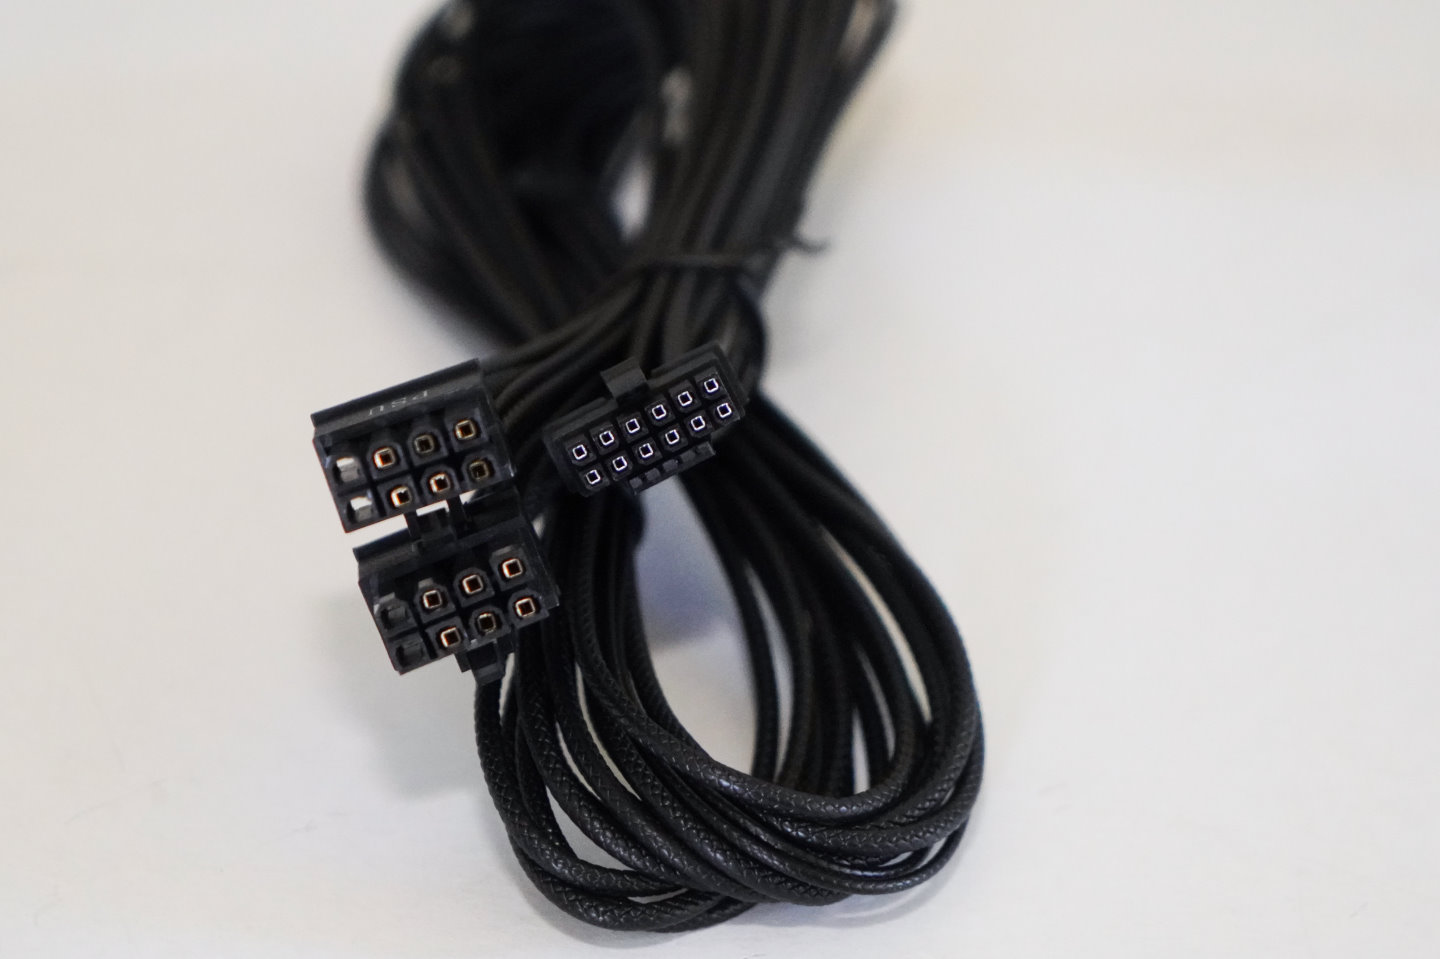 包裝附上2組PCIe電源端轉12VMPWR轉接線，但是線材為全黑色。